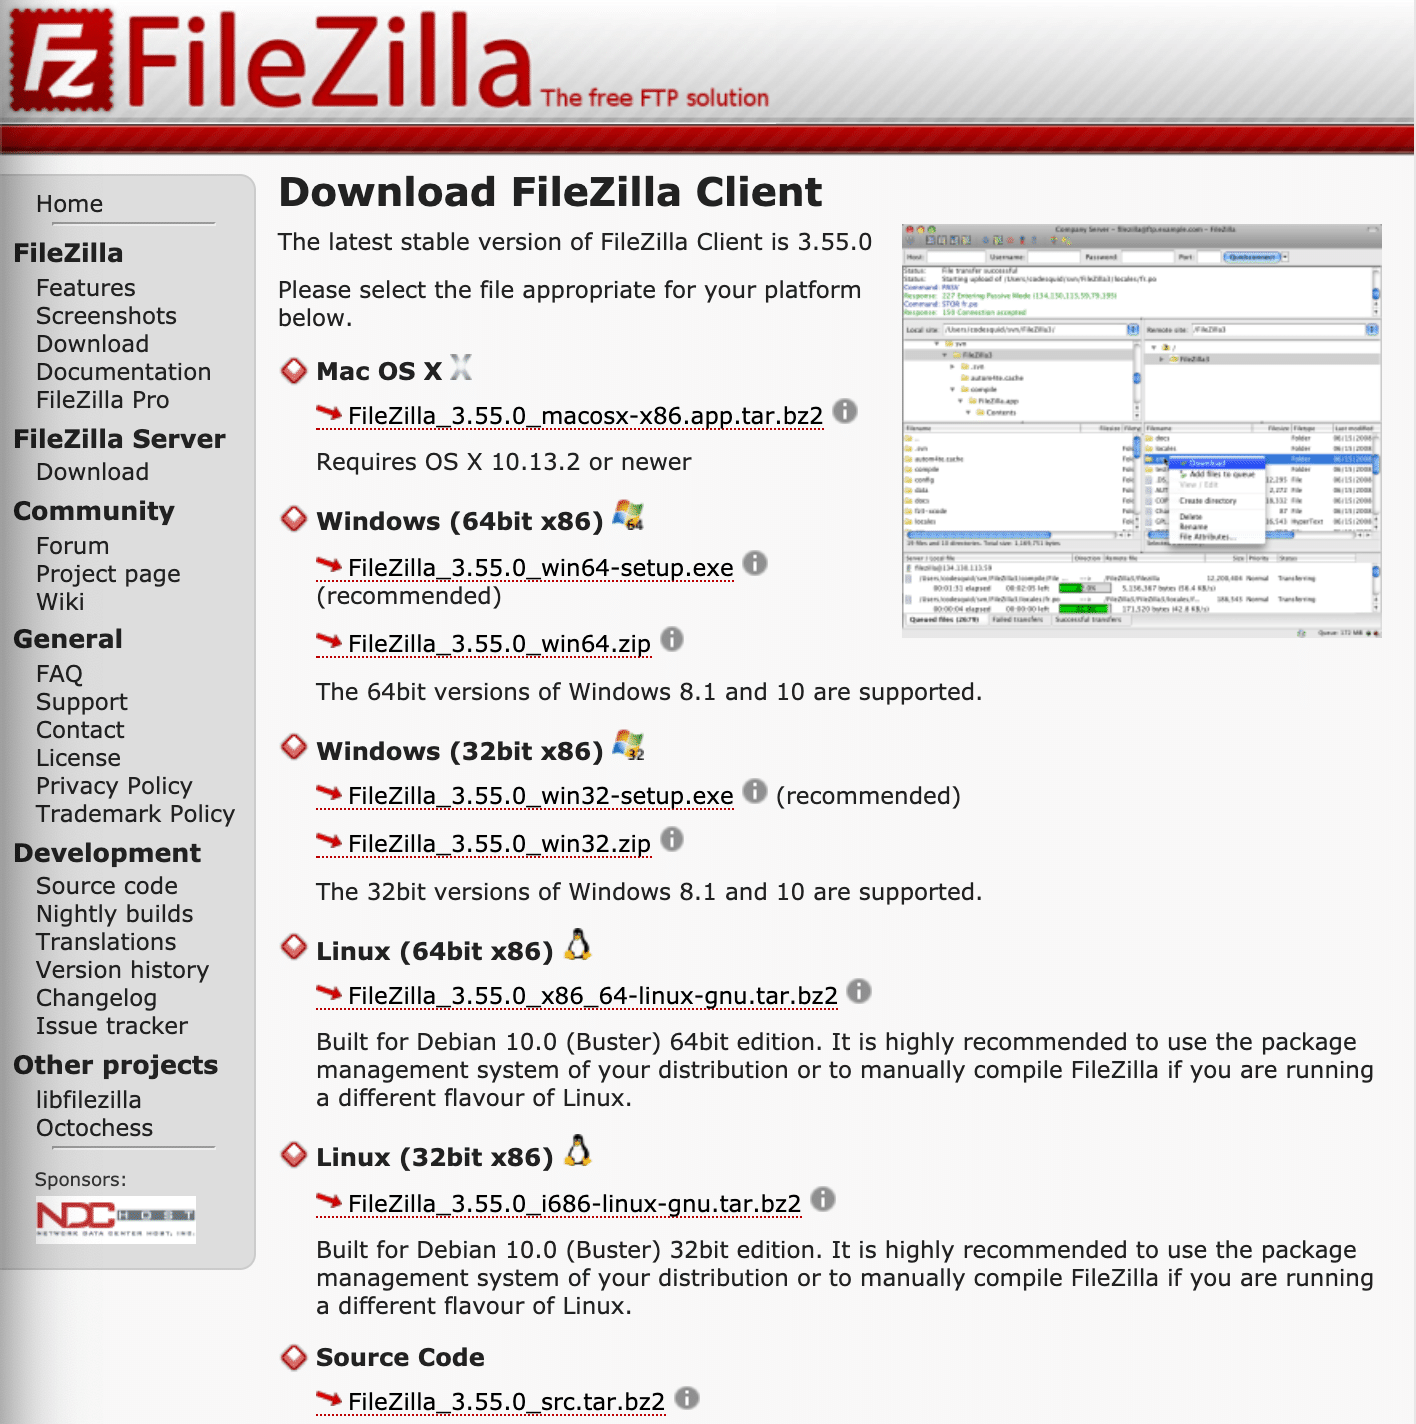 Une page avec toutes les versions de FileZilla et leurs liens de téléchargement.